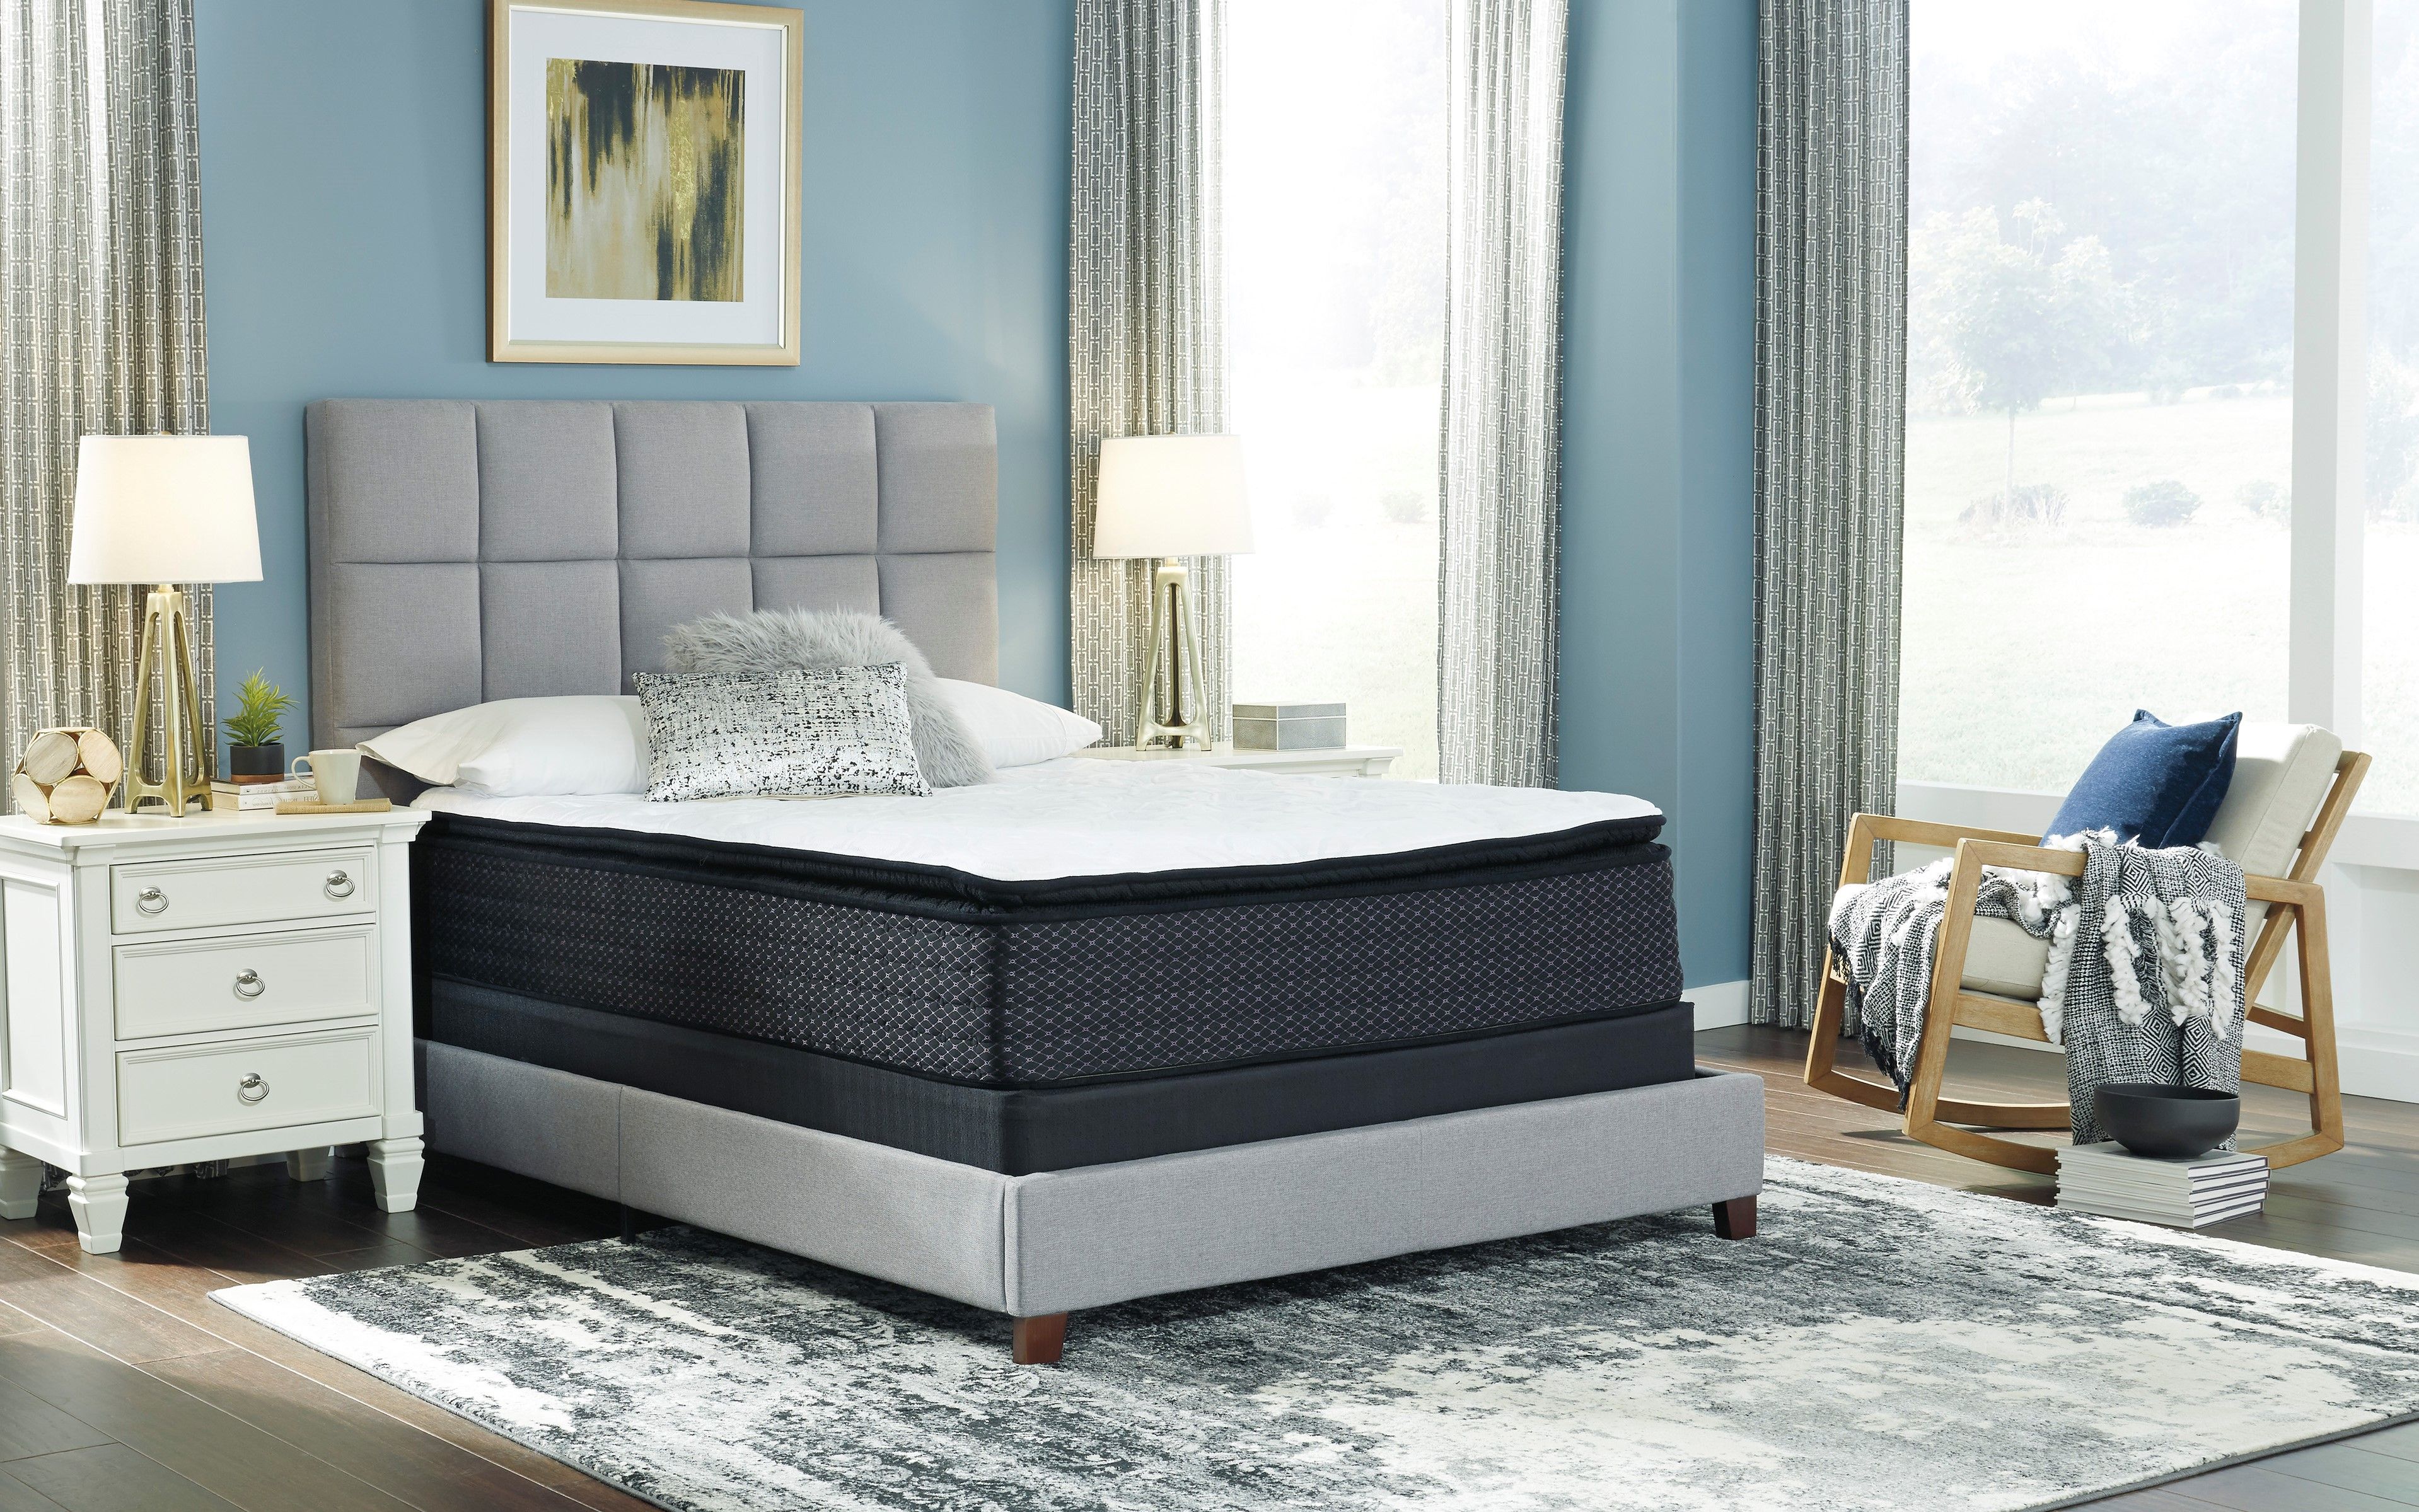 berkley jensen 15 king size eurotop mattress